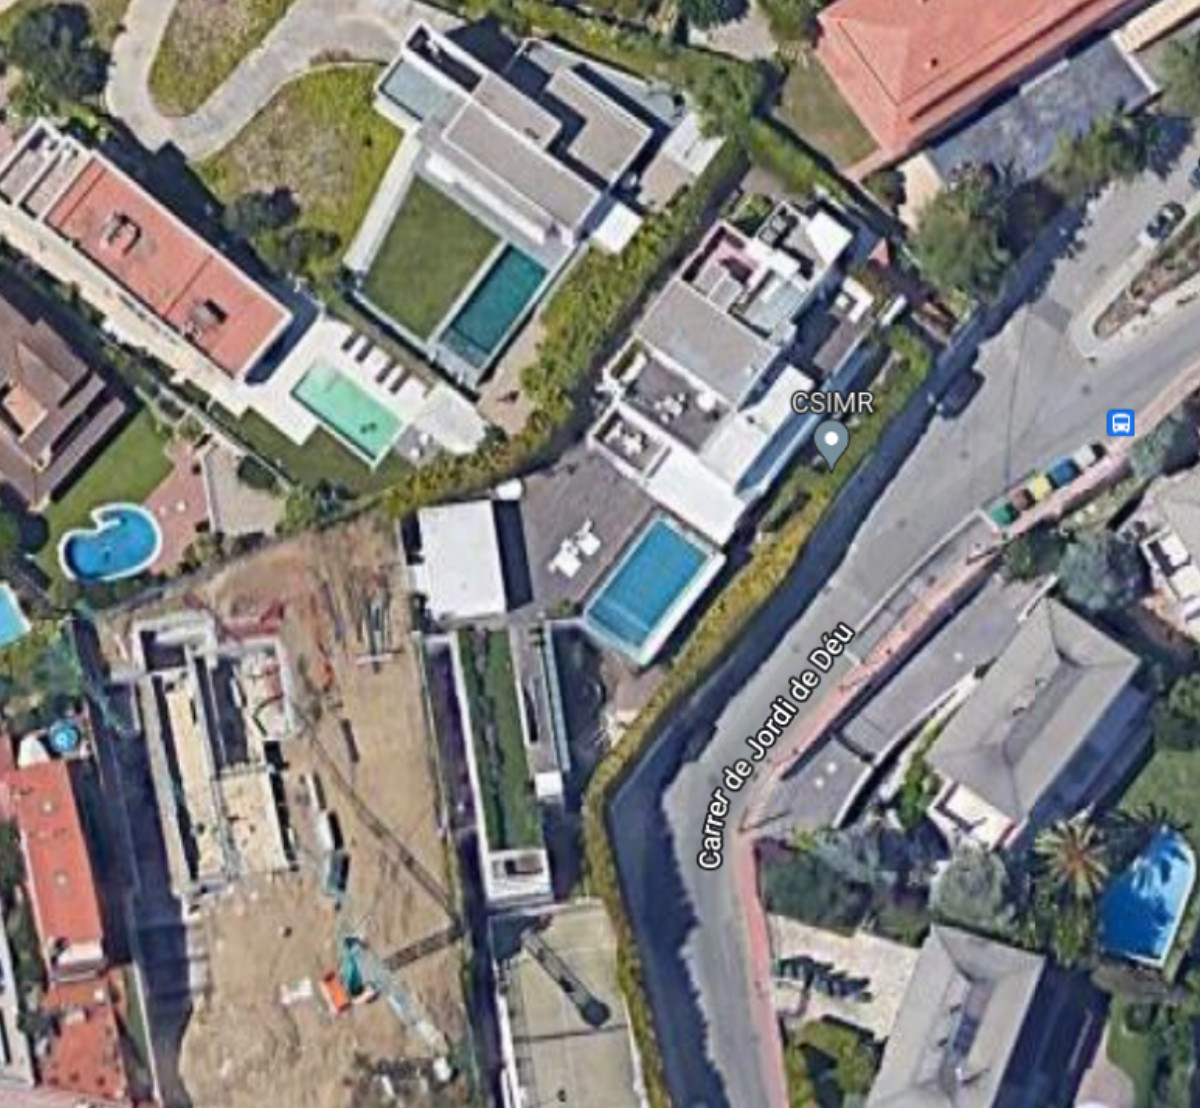 Mapa de la casa de Piqué y Shakira en Esplugues /GOOGLE